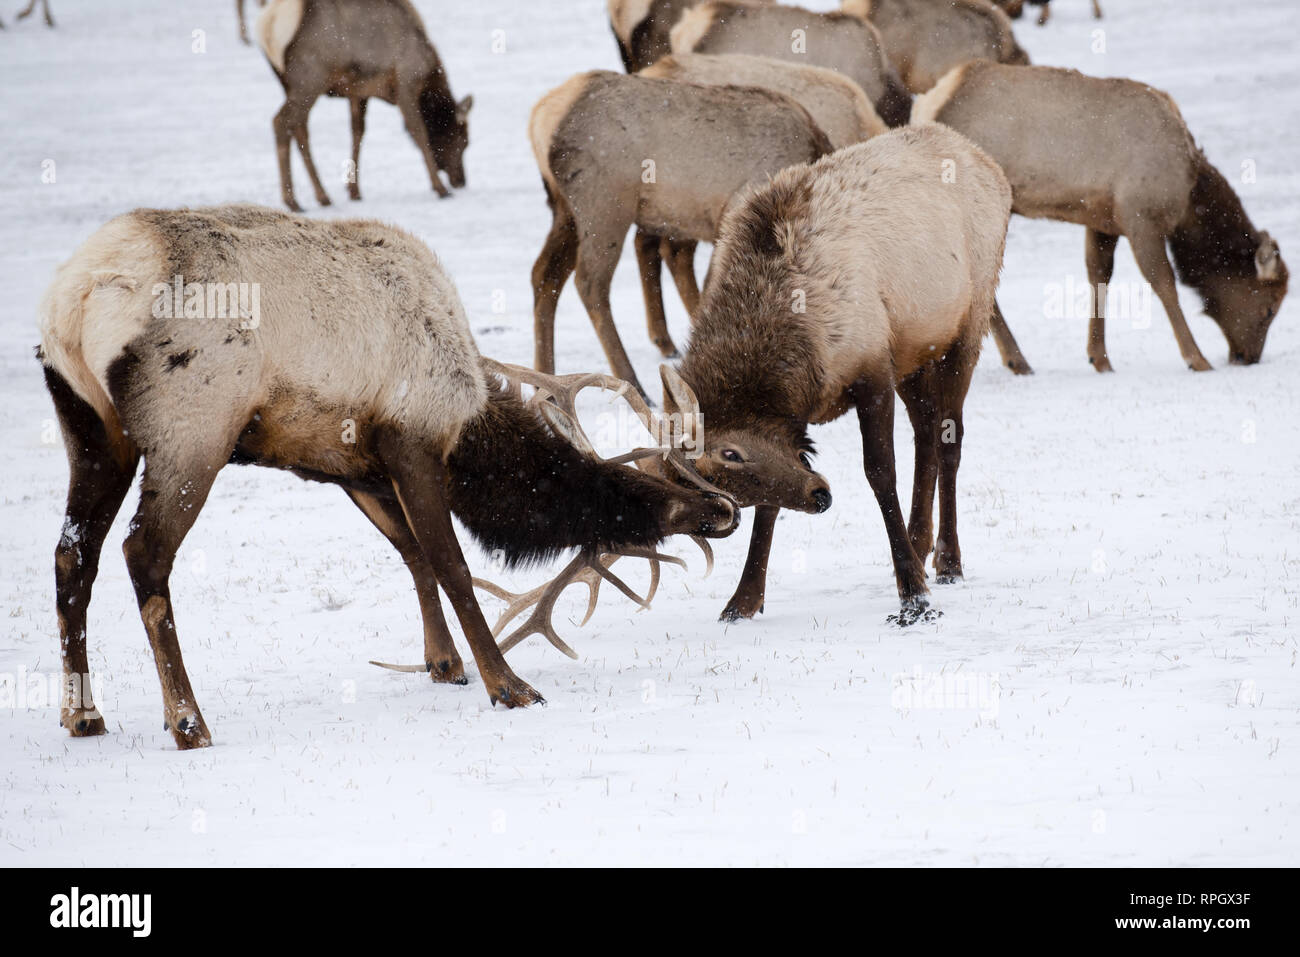 Scènes de la faune et de Jackson Hole, Wyoming Yellowstone en hiver Banque D'Images